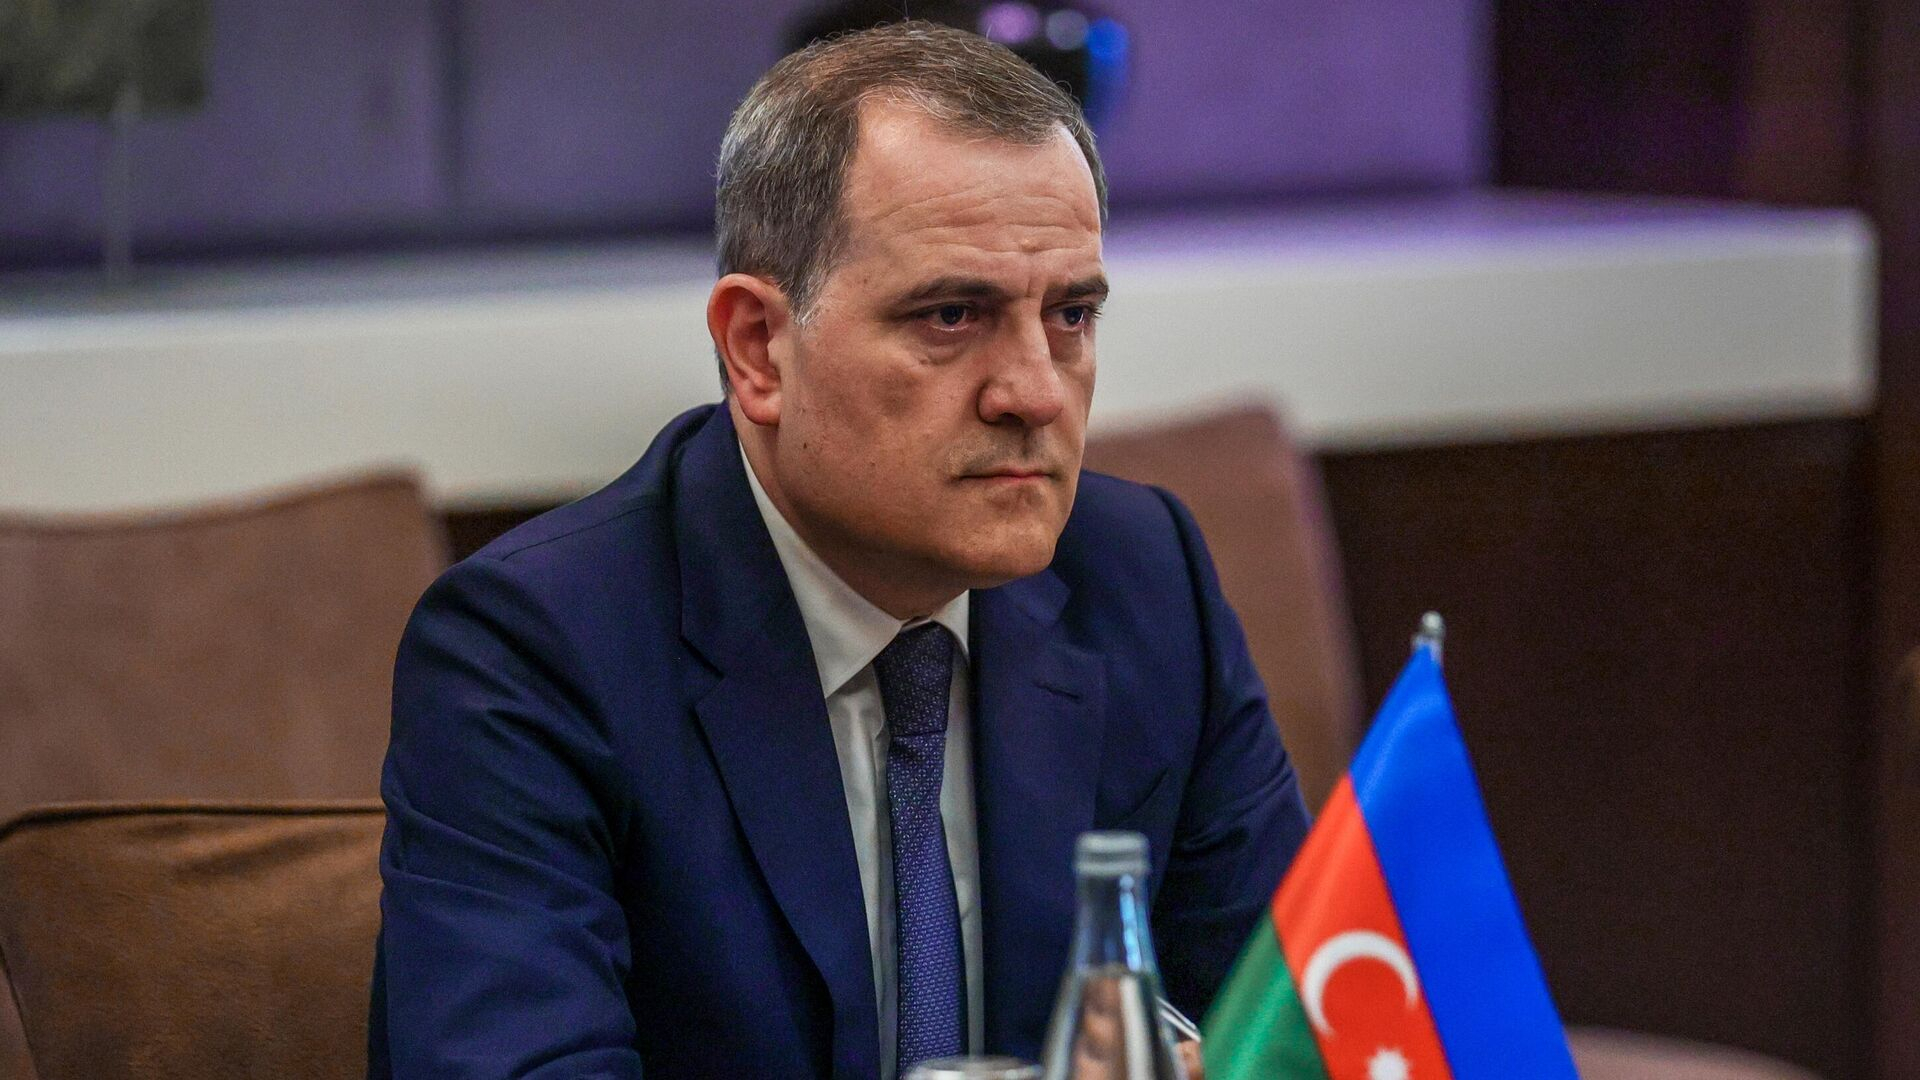 Министр: Вызывает беспокойство роль третьих лиц в разжигании реваншистского поведения Армении